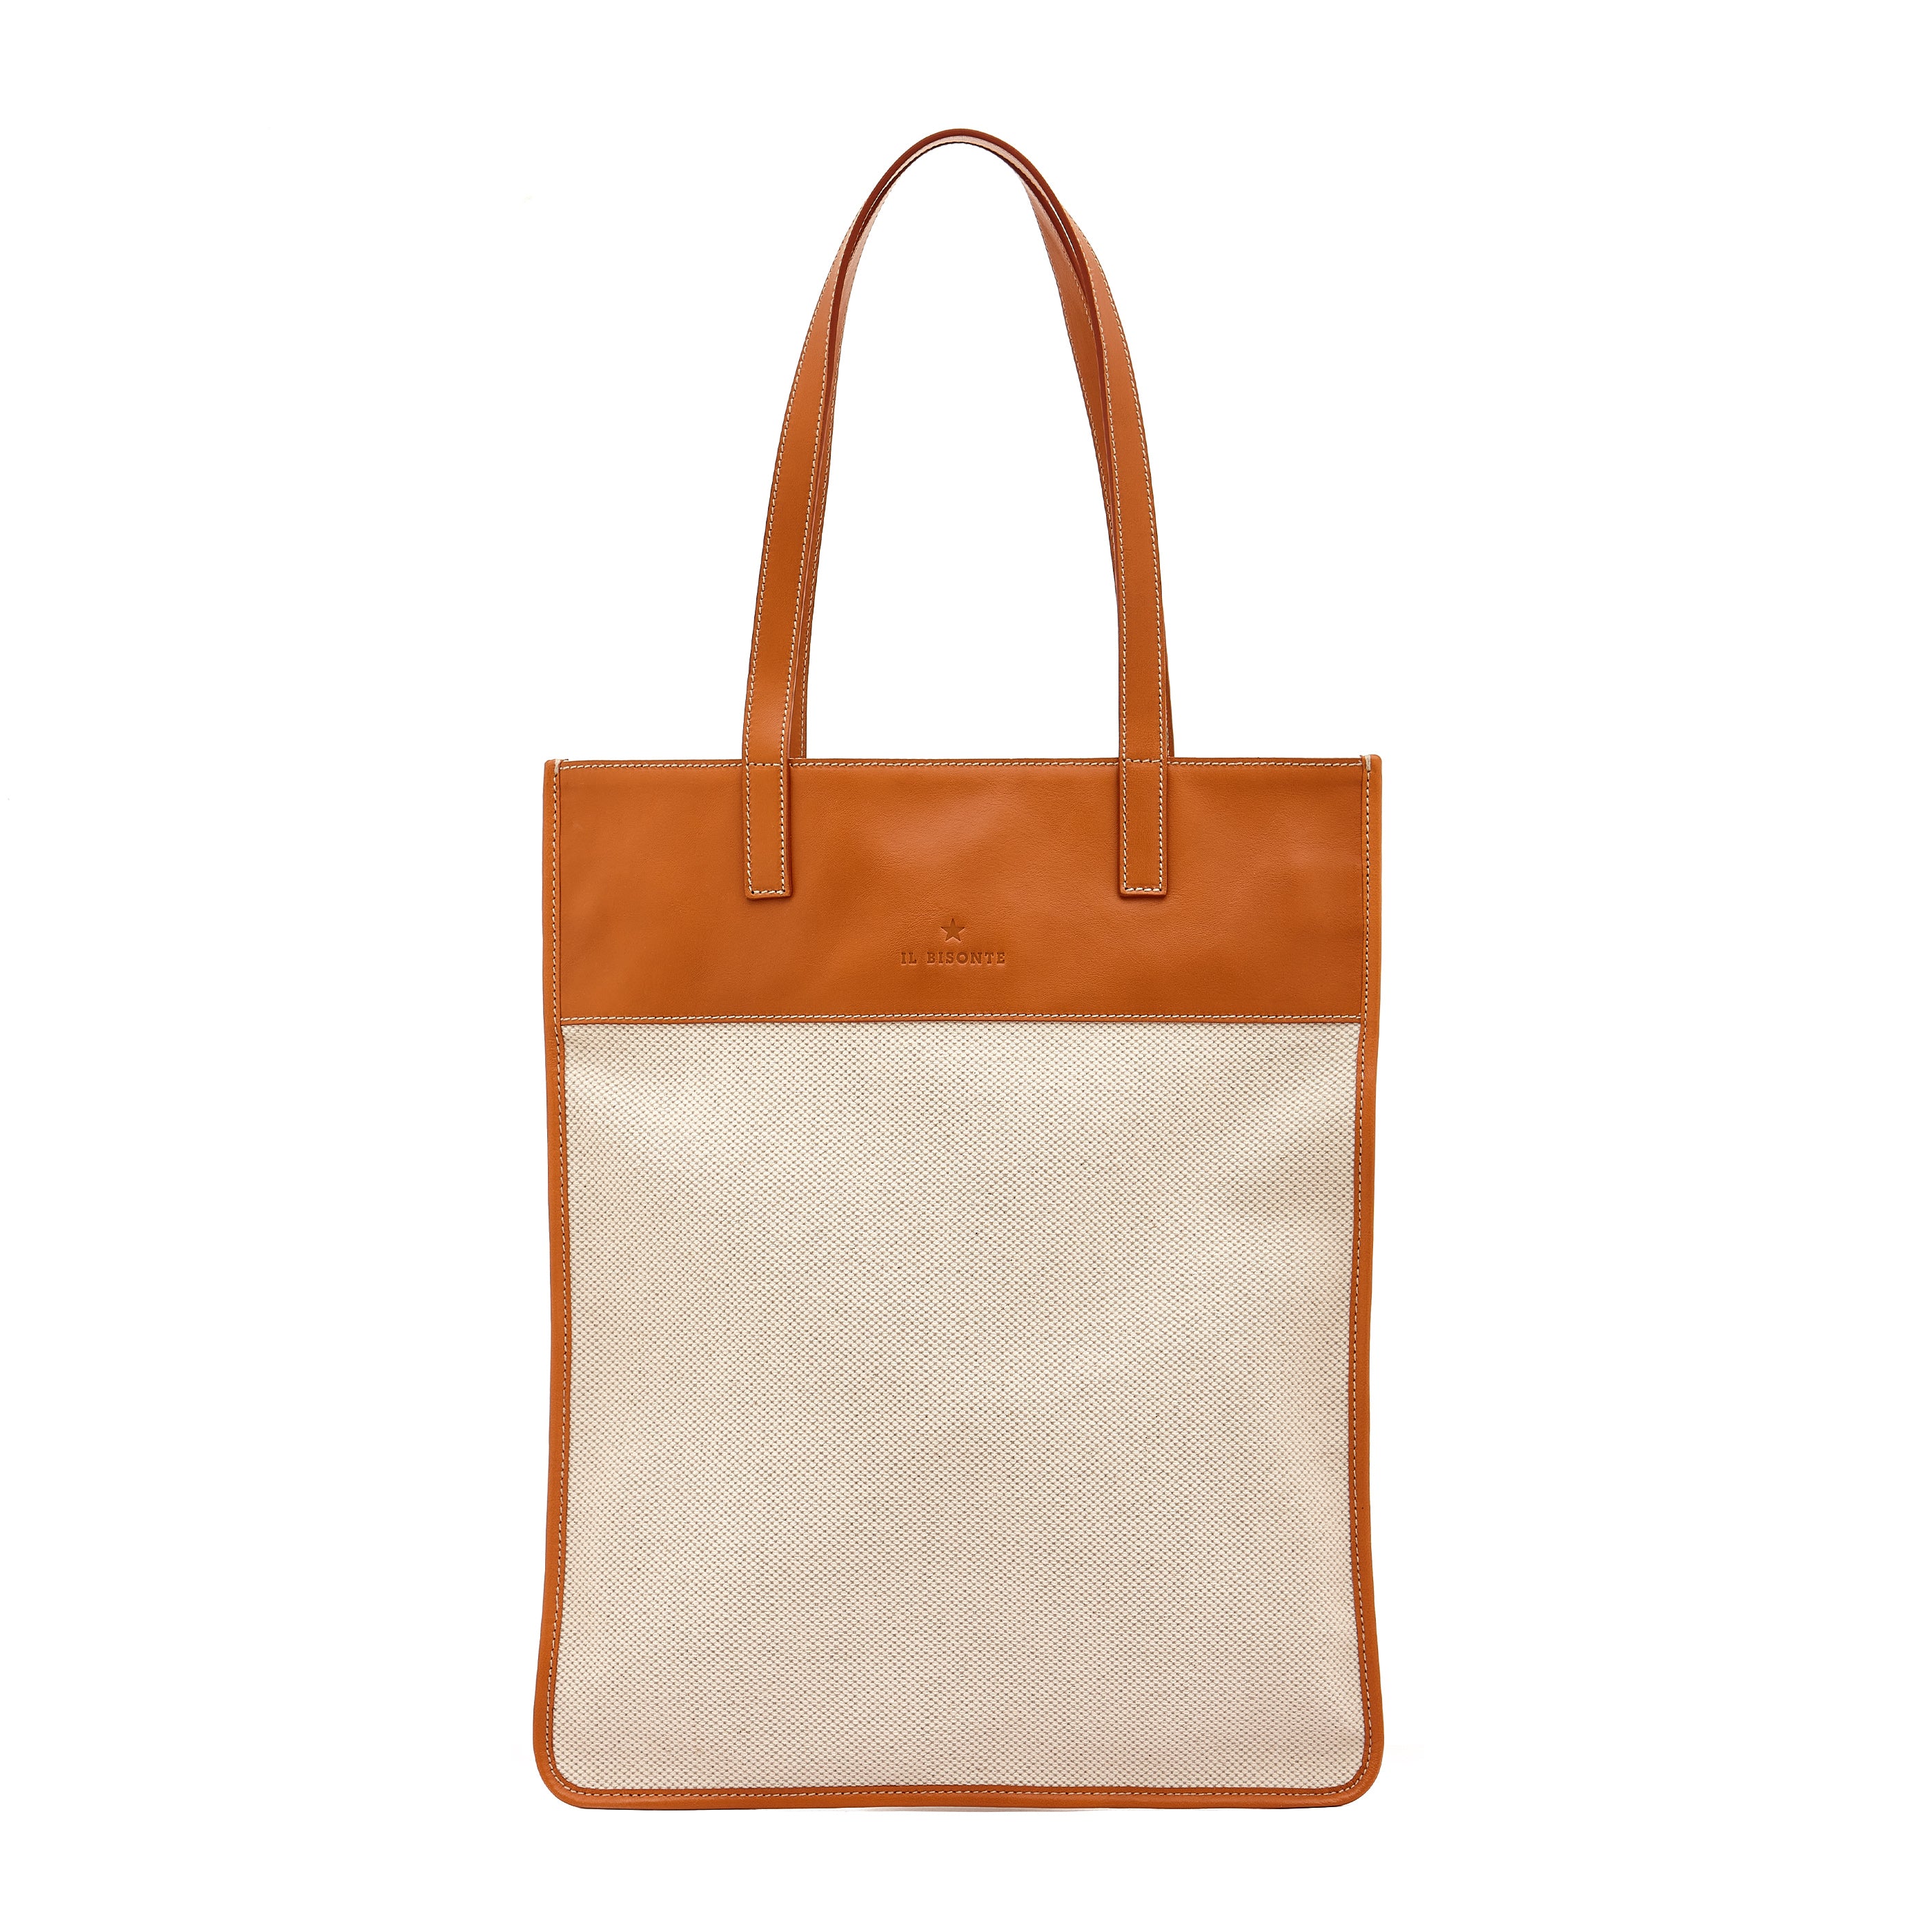 Marini | Women's tote bag in fabric color natural / caramel